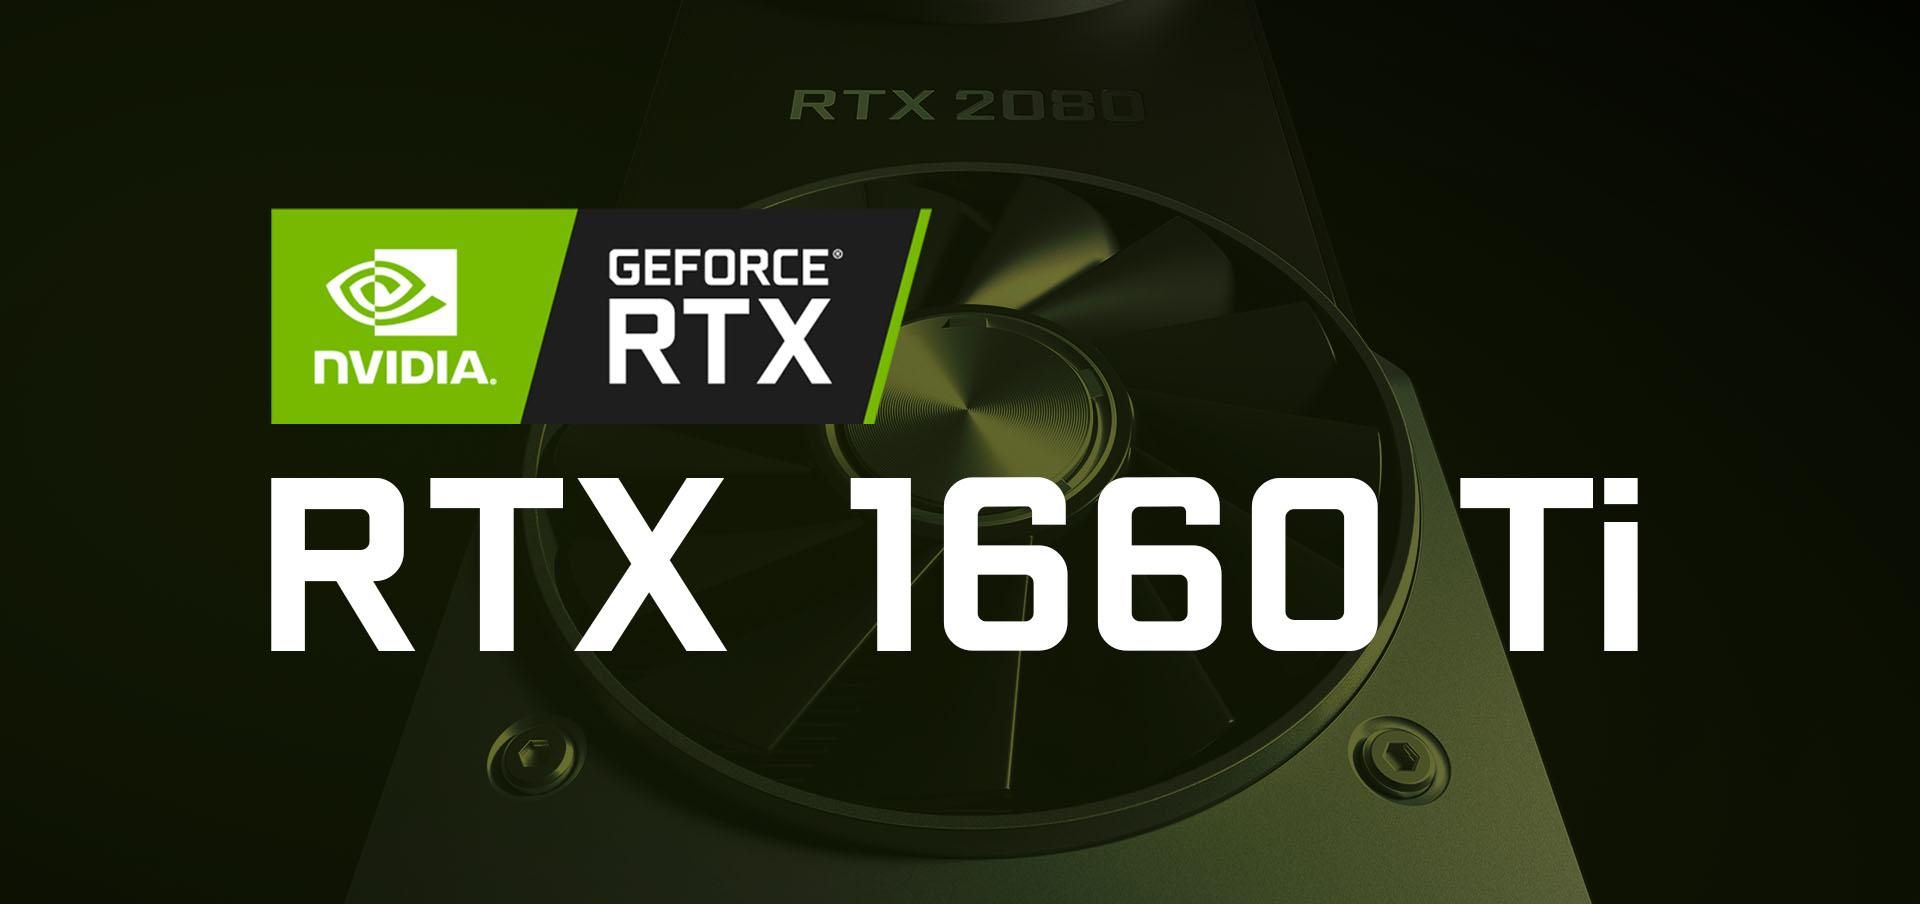 Відеокарту NVIDIA GeForce GTX 1660 Ti випробували на продуктивність